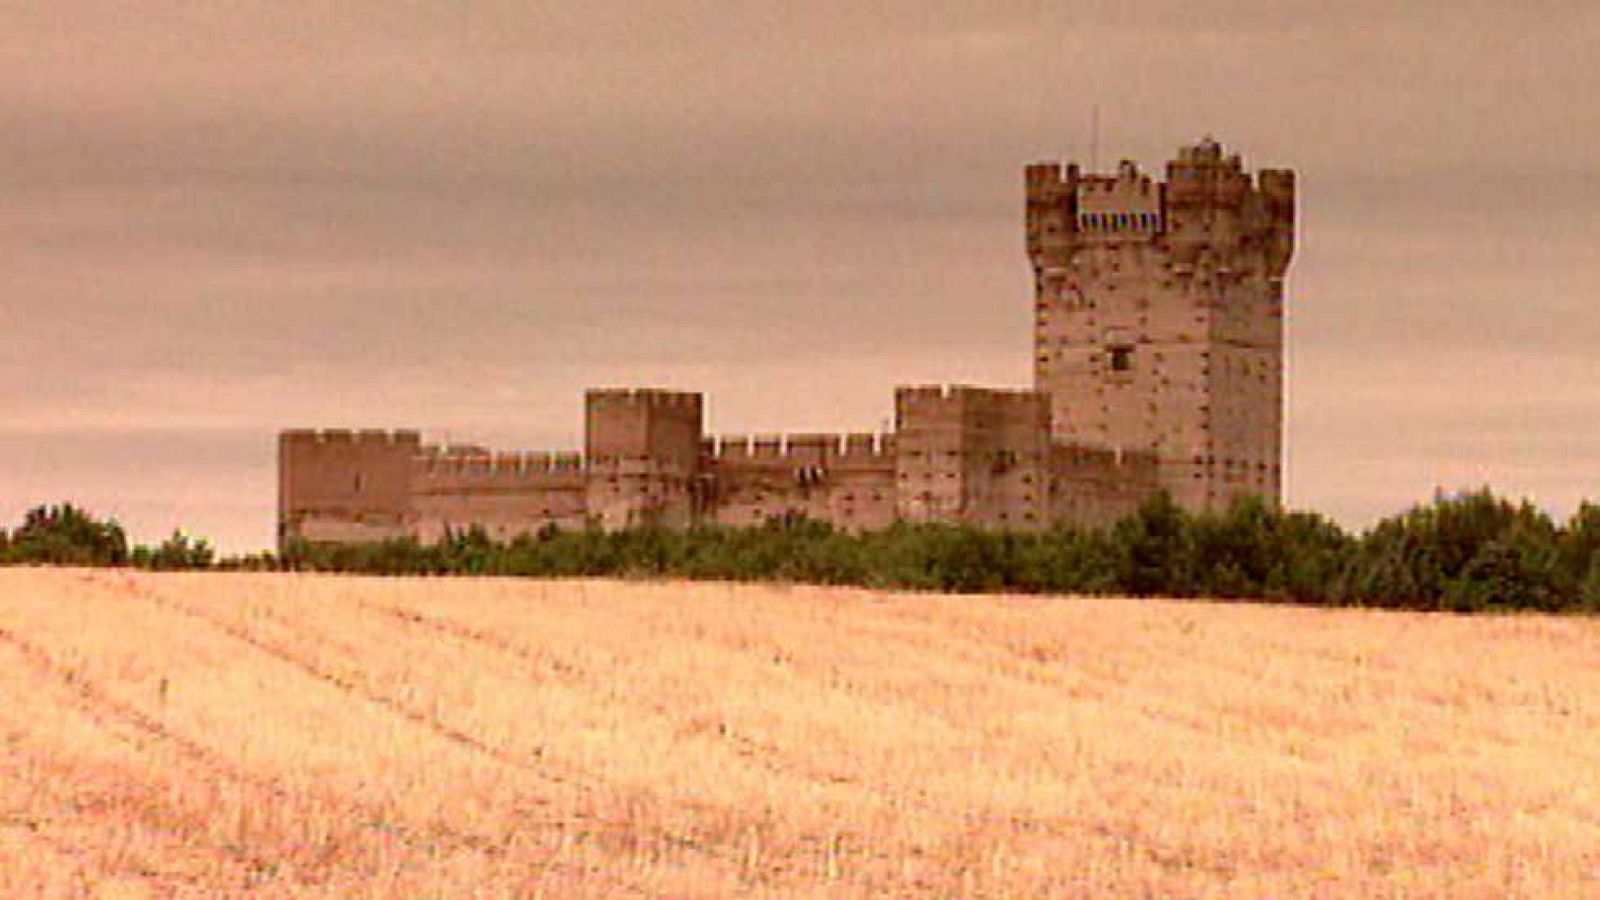 Paisajes del castellano - Valladolid, cuna y tumba de reyes